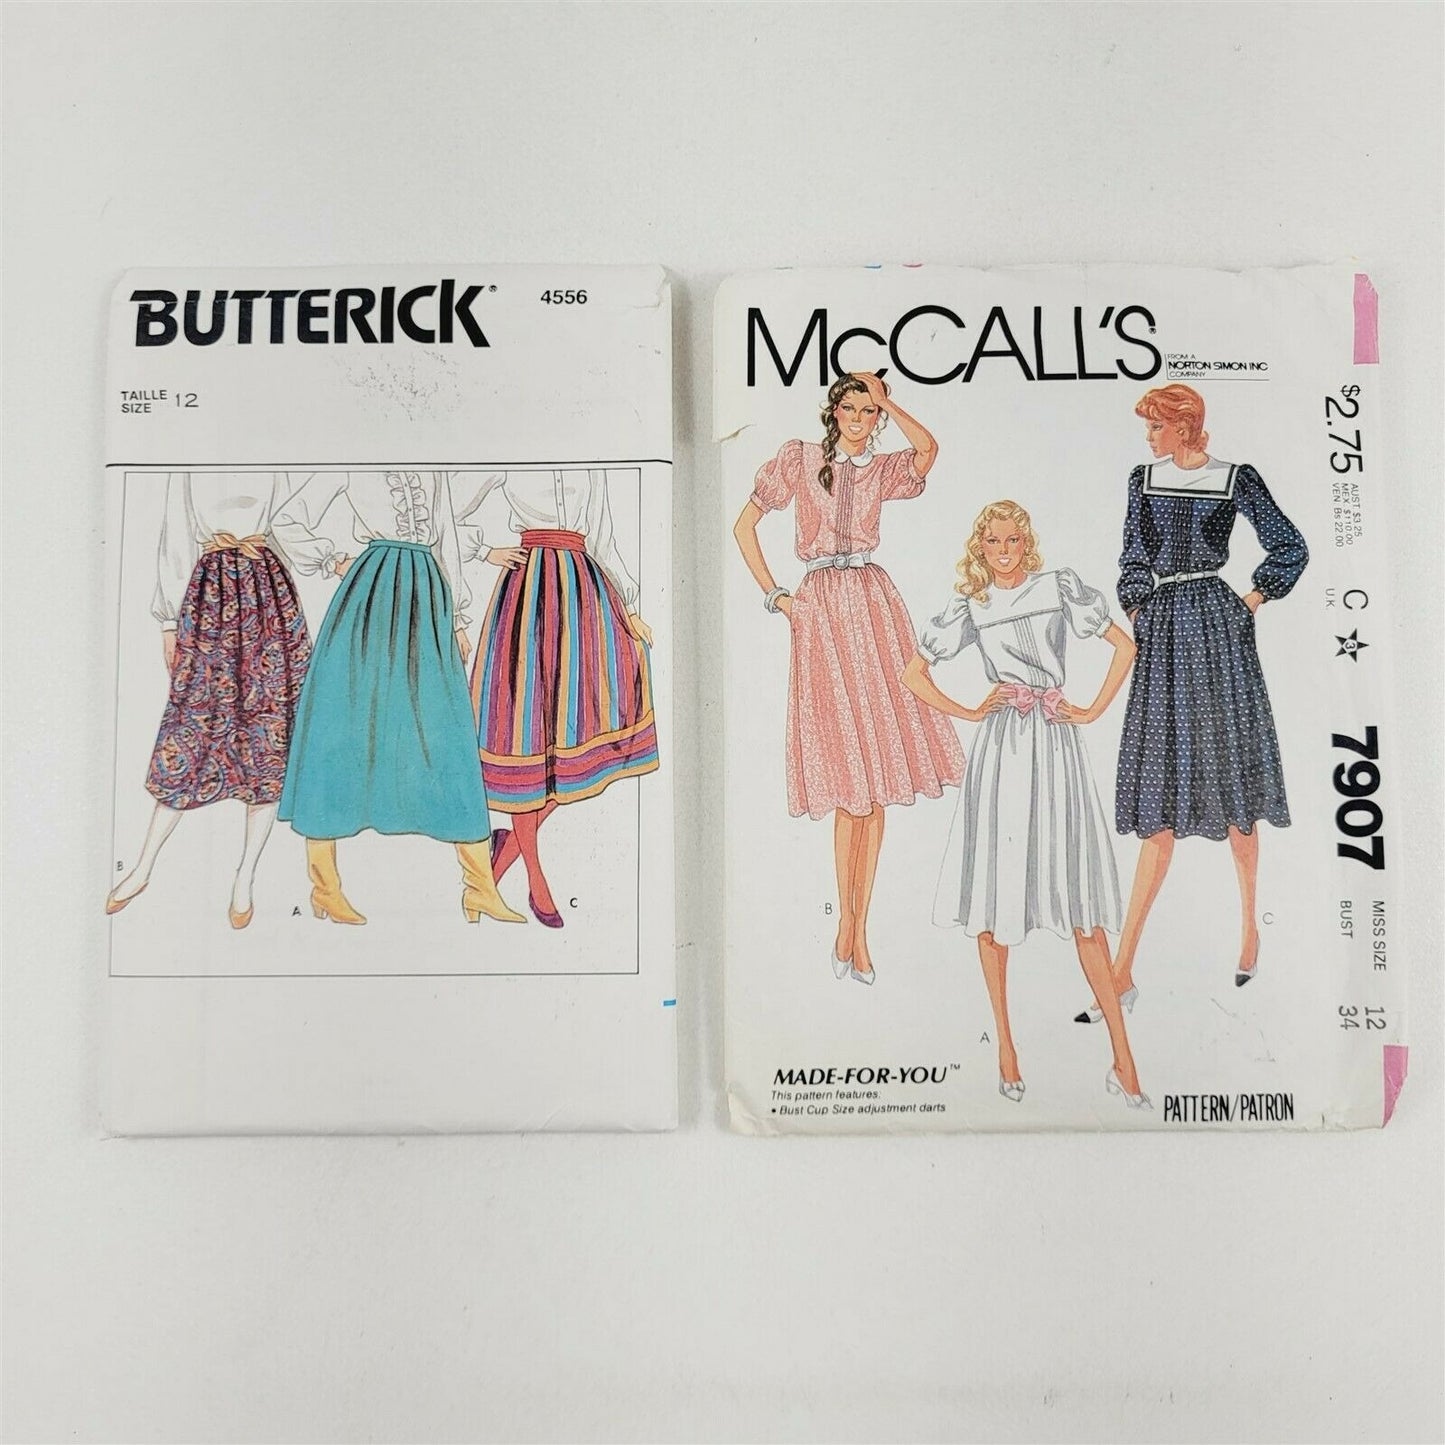 9 Vintage Sewing Patterns Misses Size 12 Dresses Tops Skirts Blazer Jacket